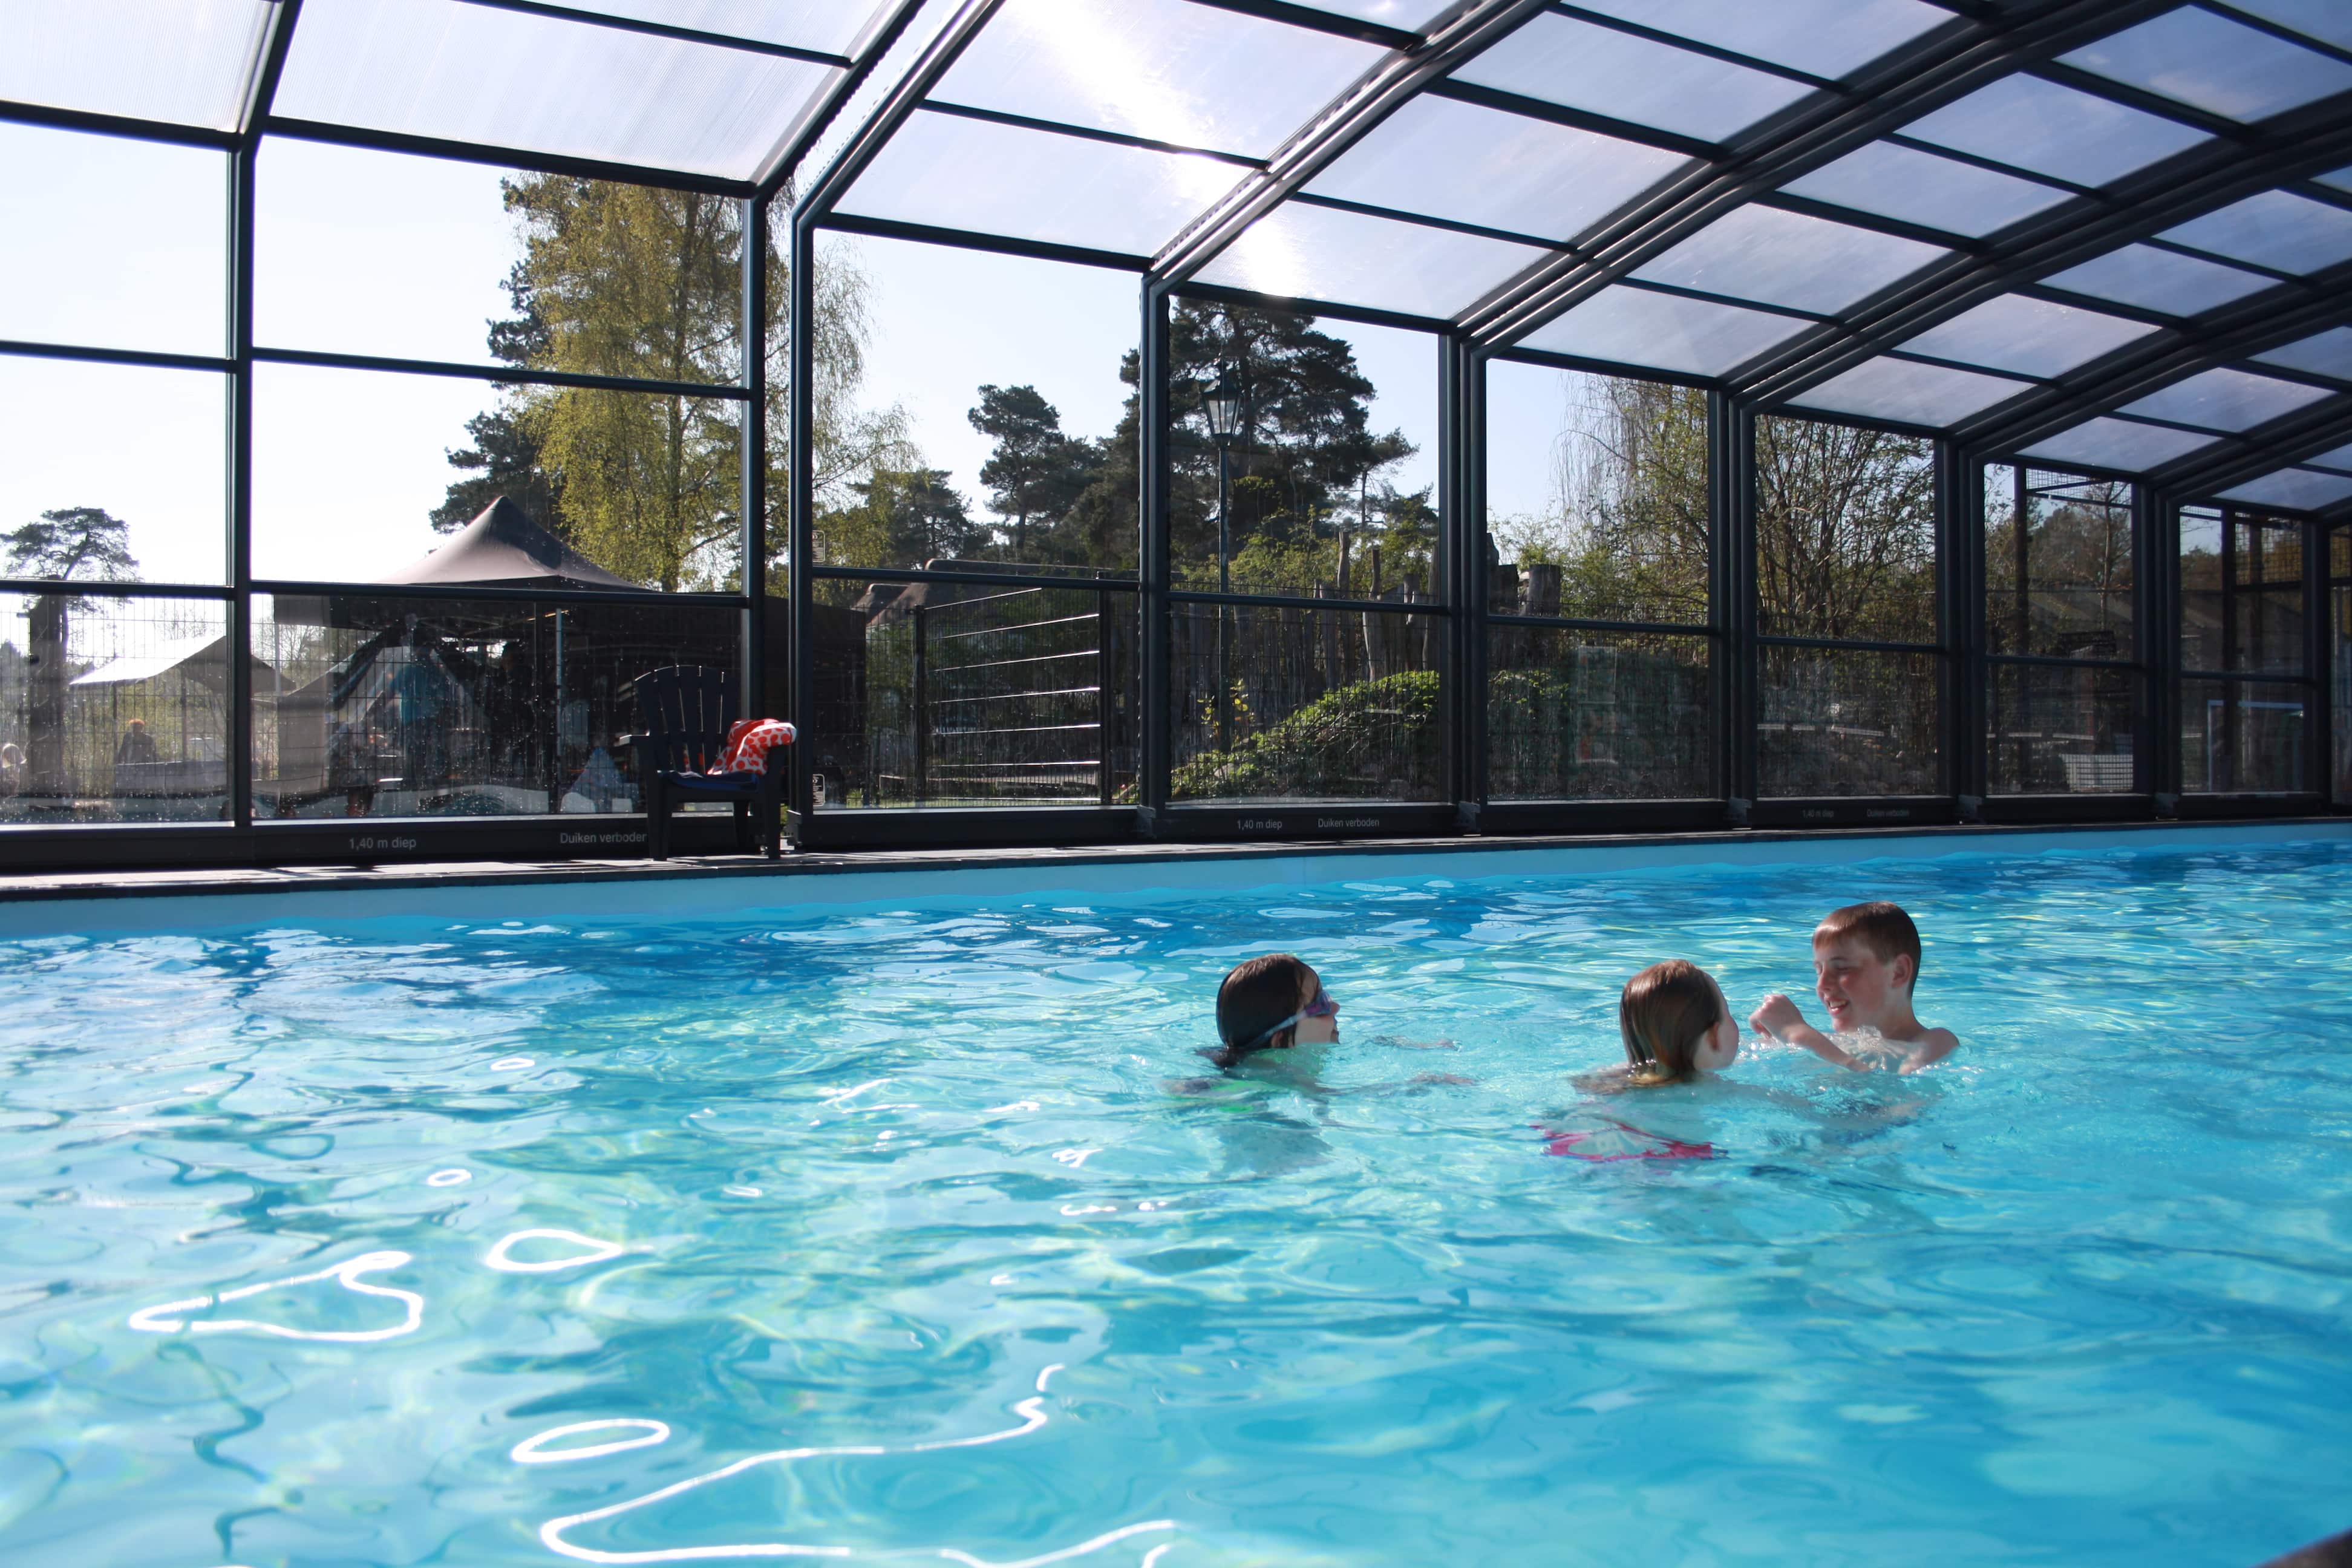 Public pool enclosures - Va Norg, Netherlands